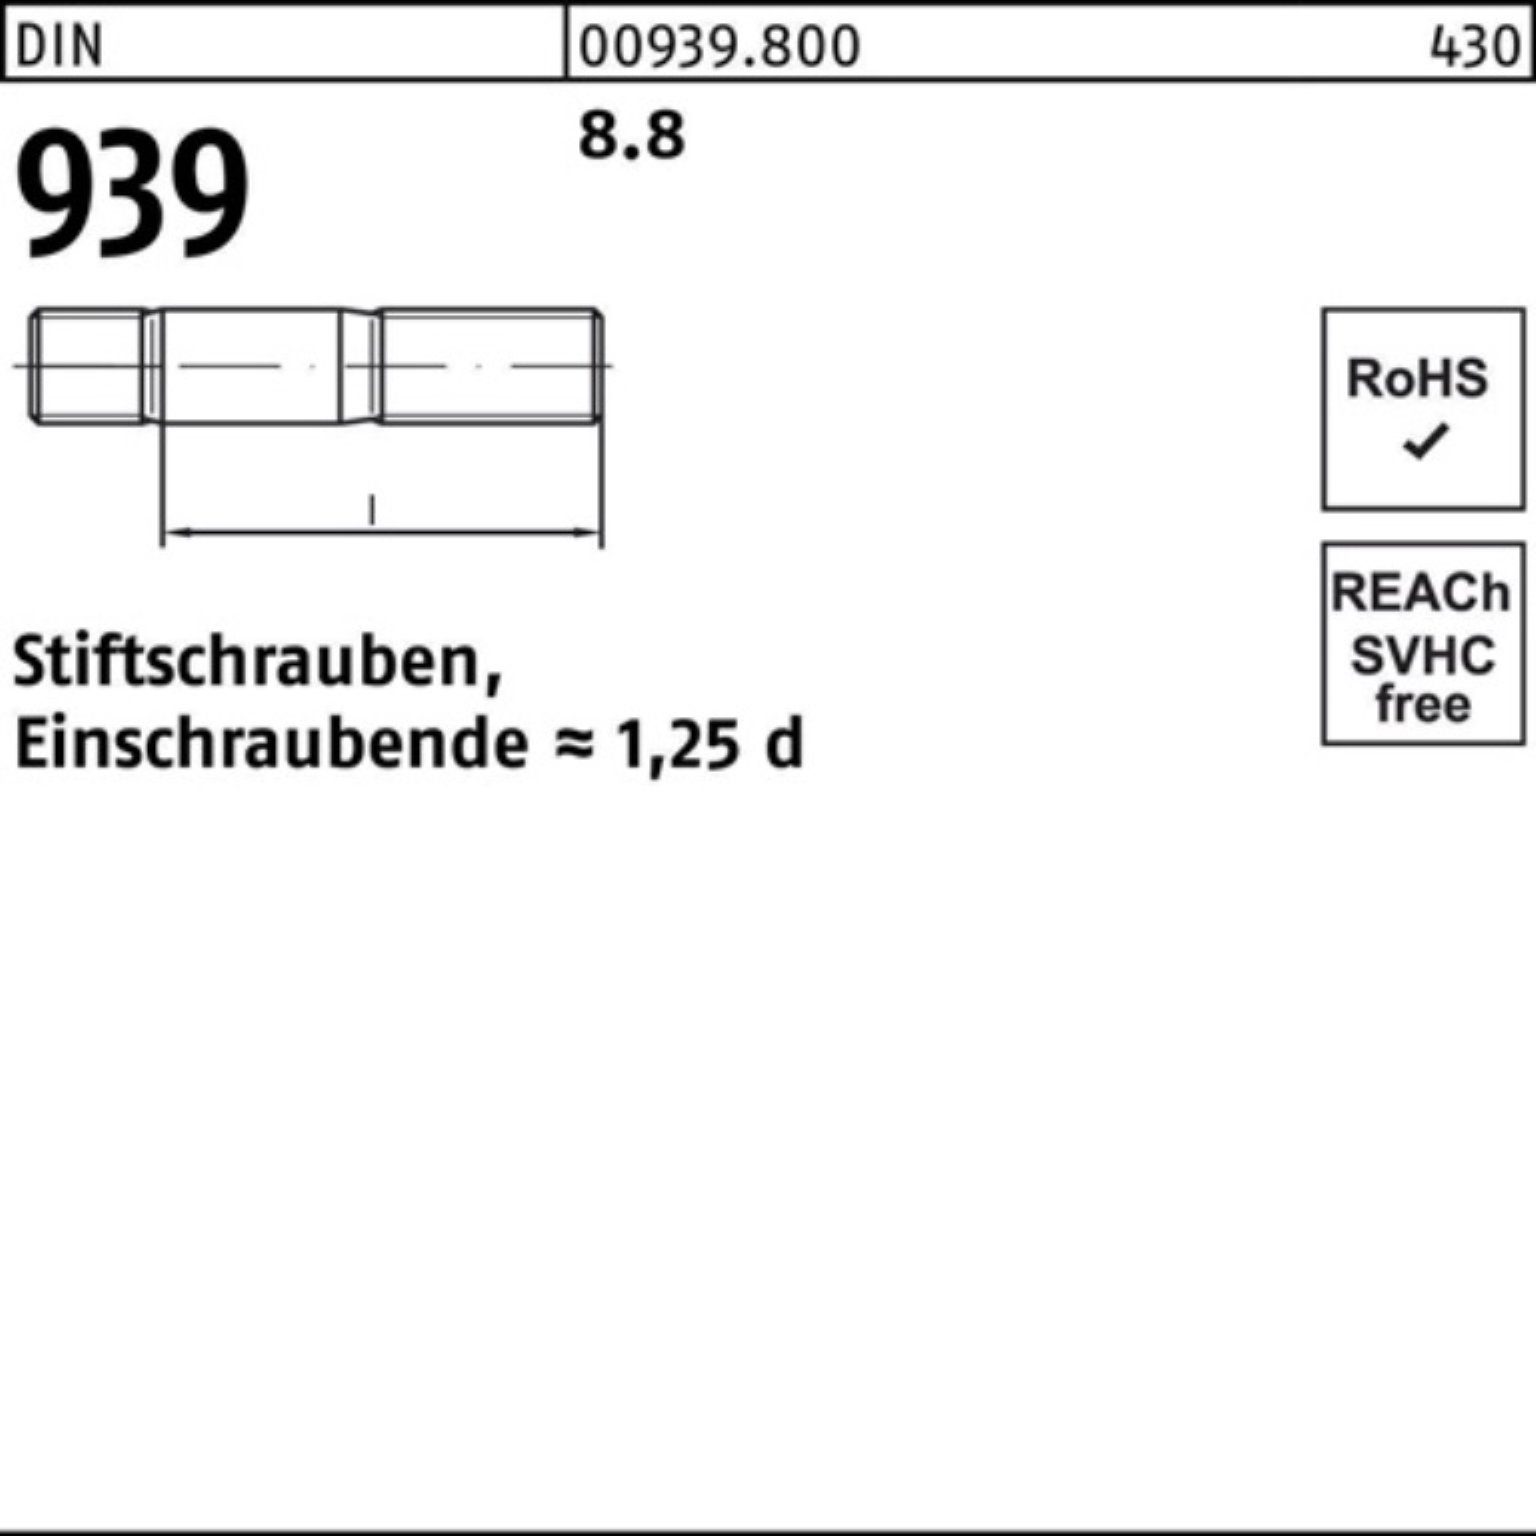 Reyher Stiftschraube 100er Pack Stiftschraube Einschraubende=1,25d DIN 10 939 8.8 M16x 130